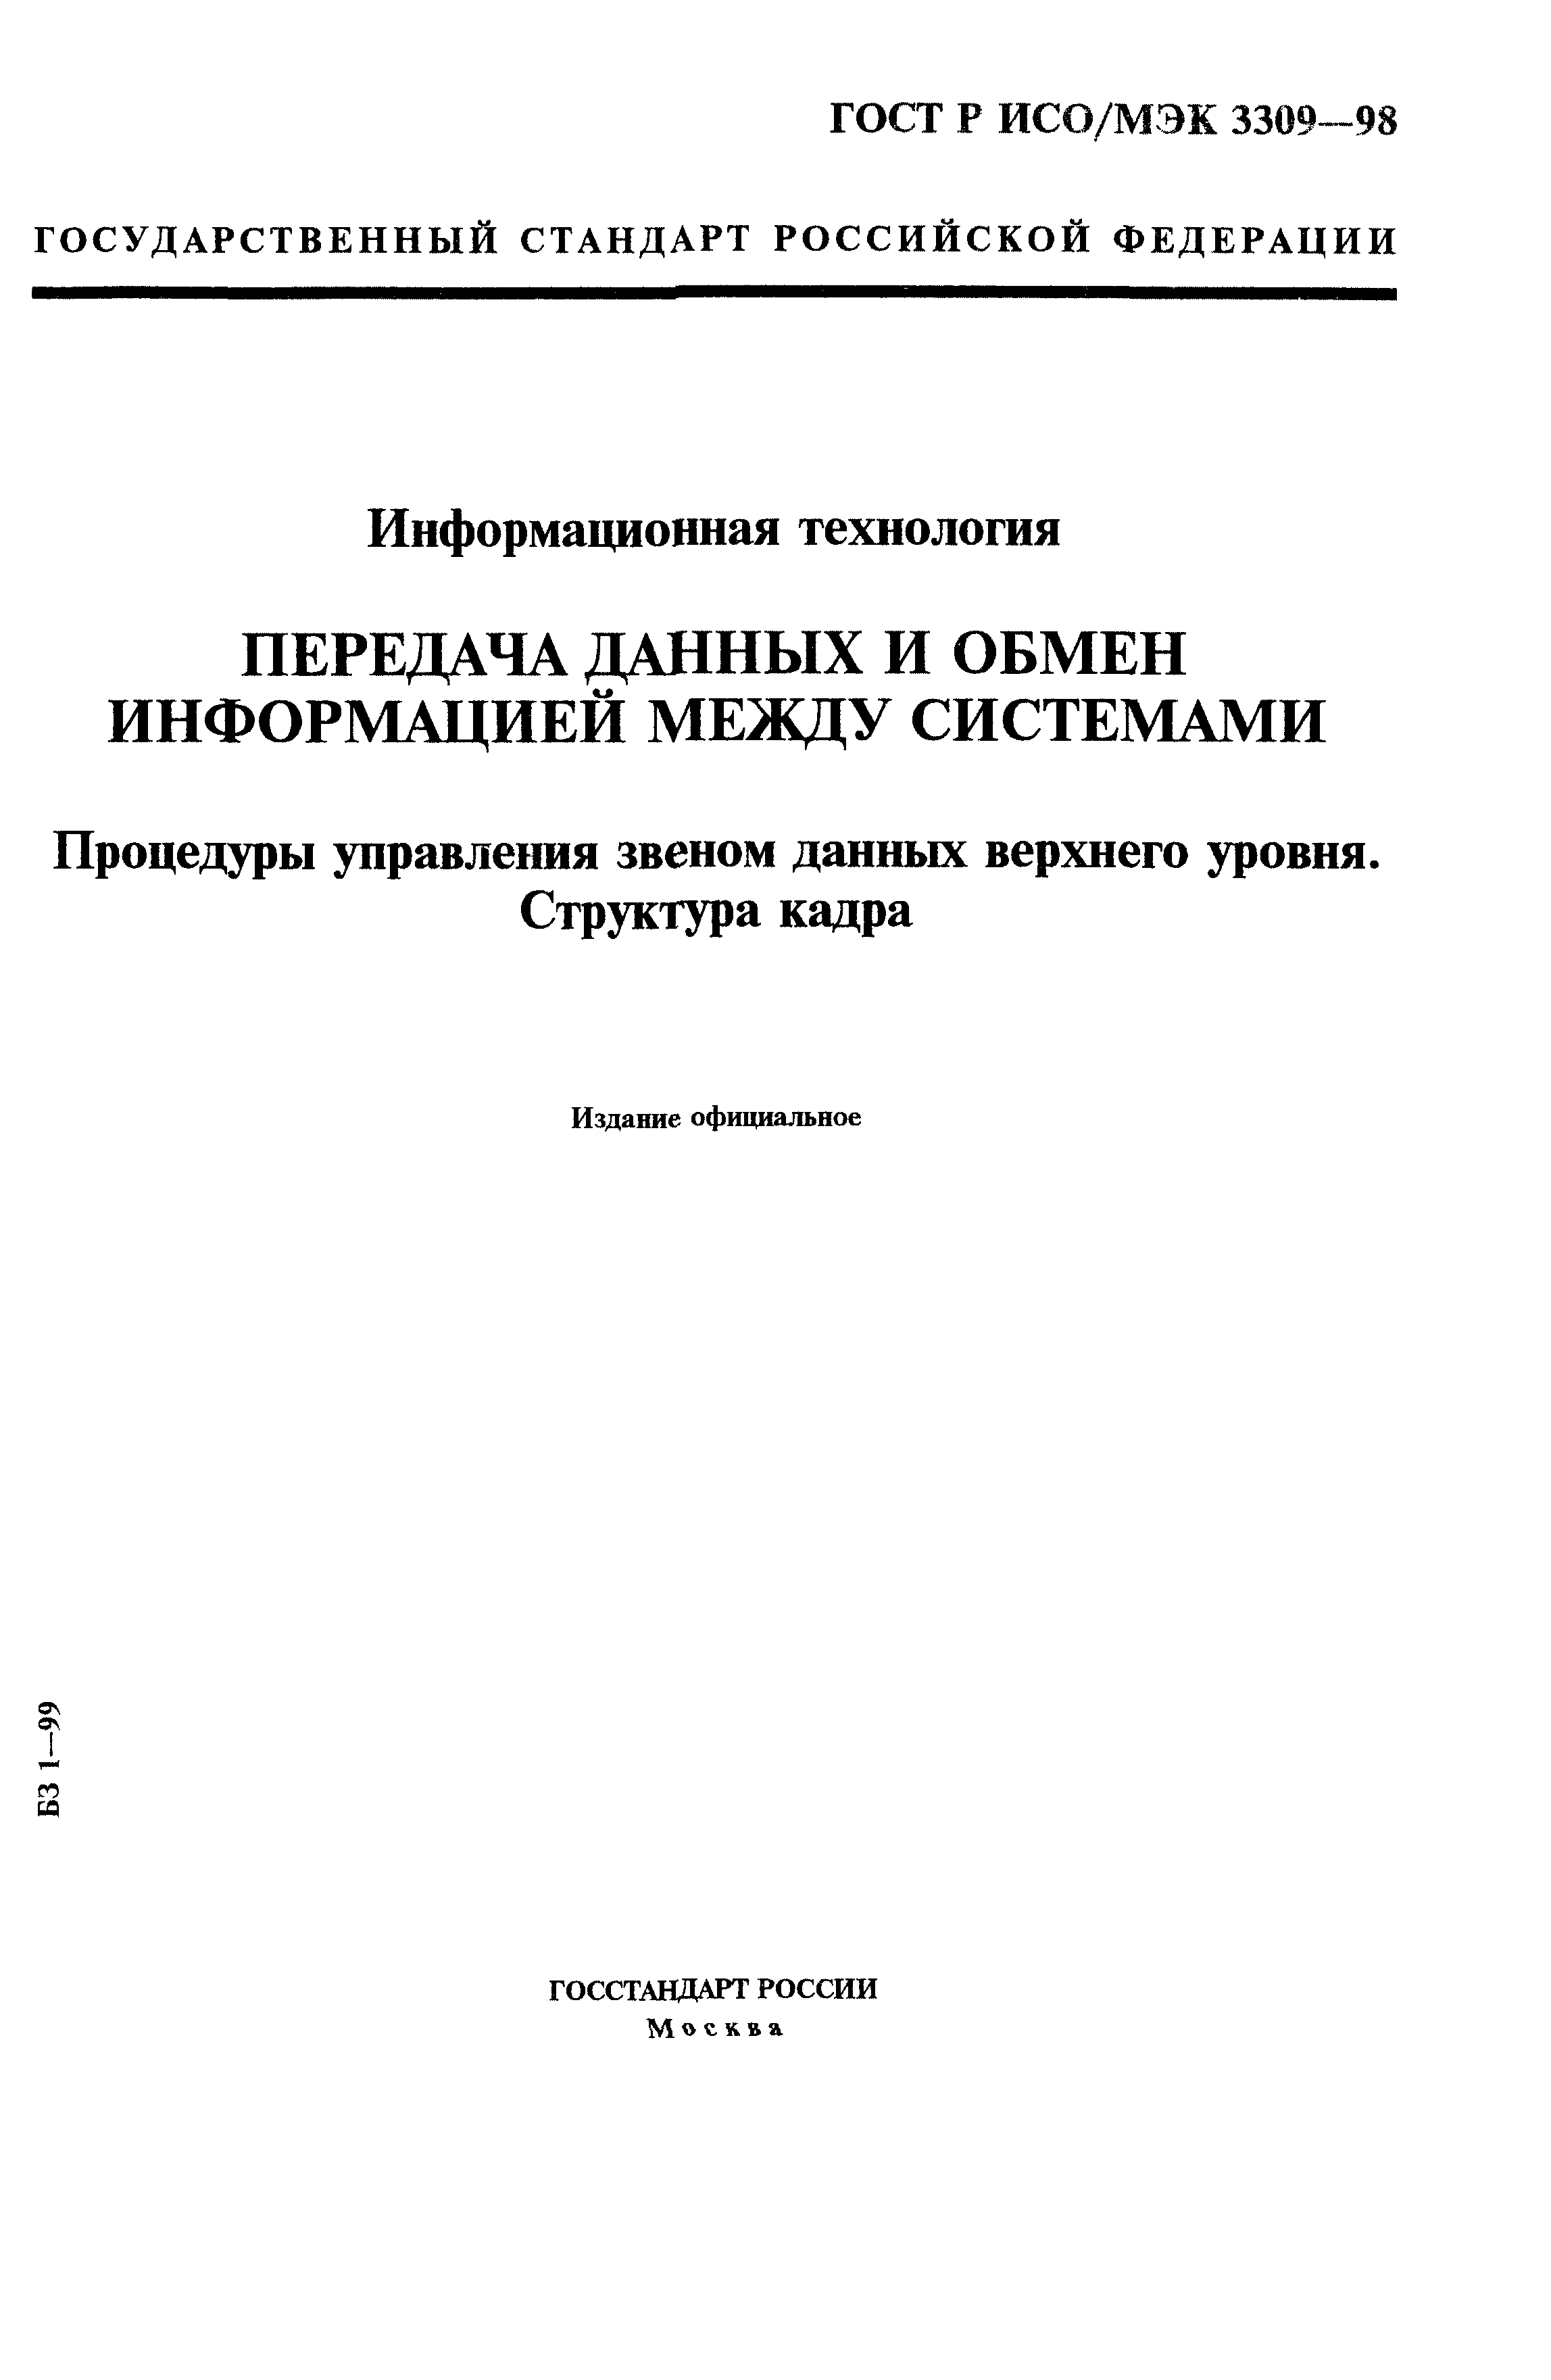 ГОСТ Р ИСО/МЭК 3309-98